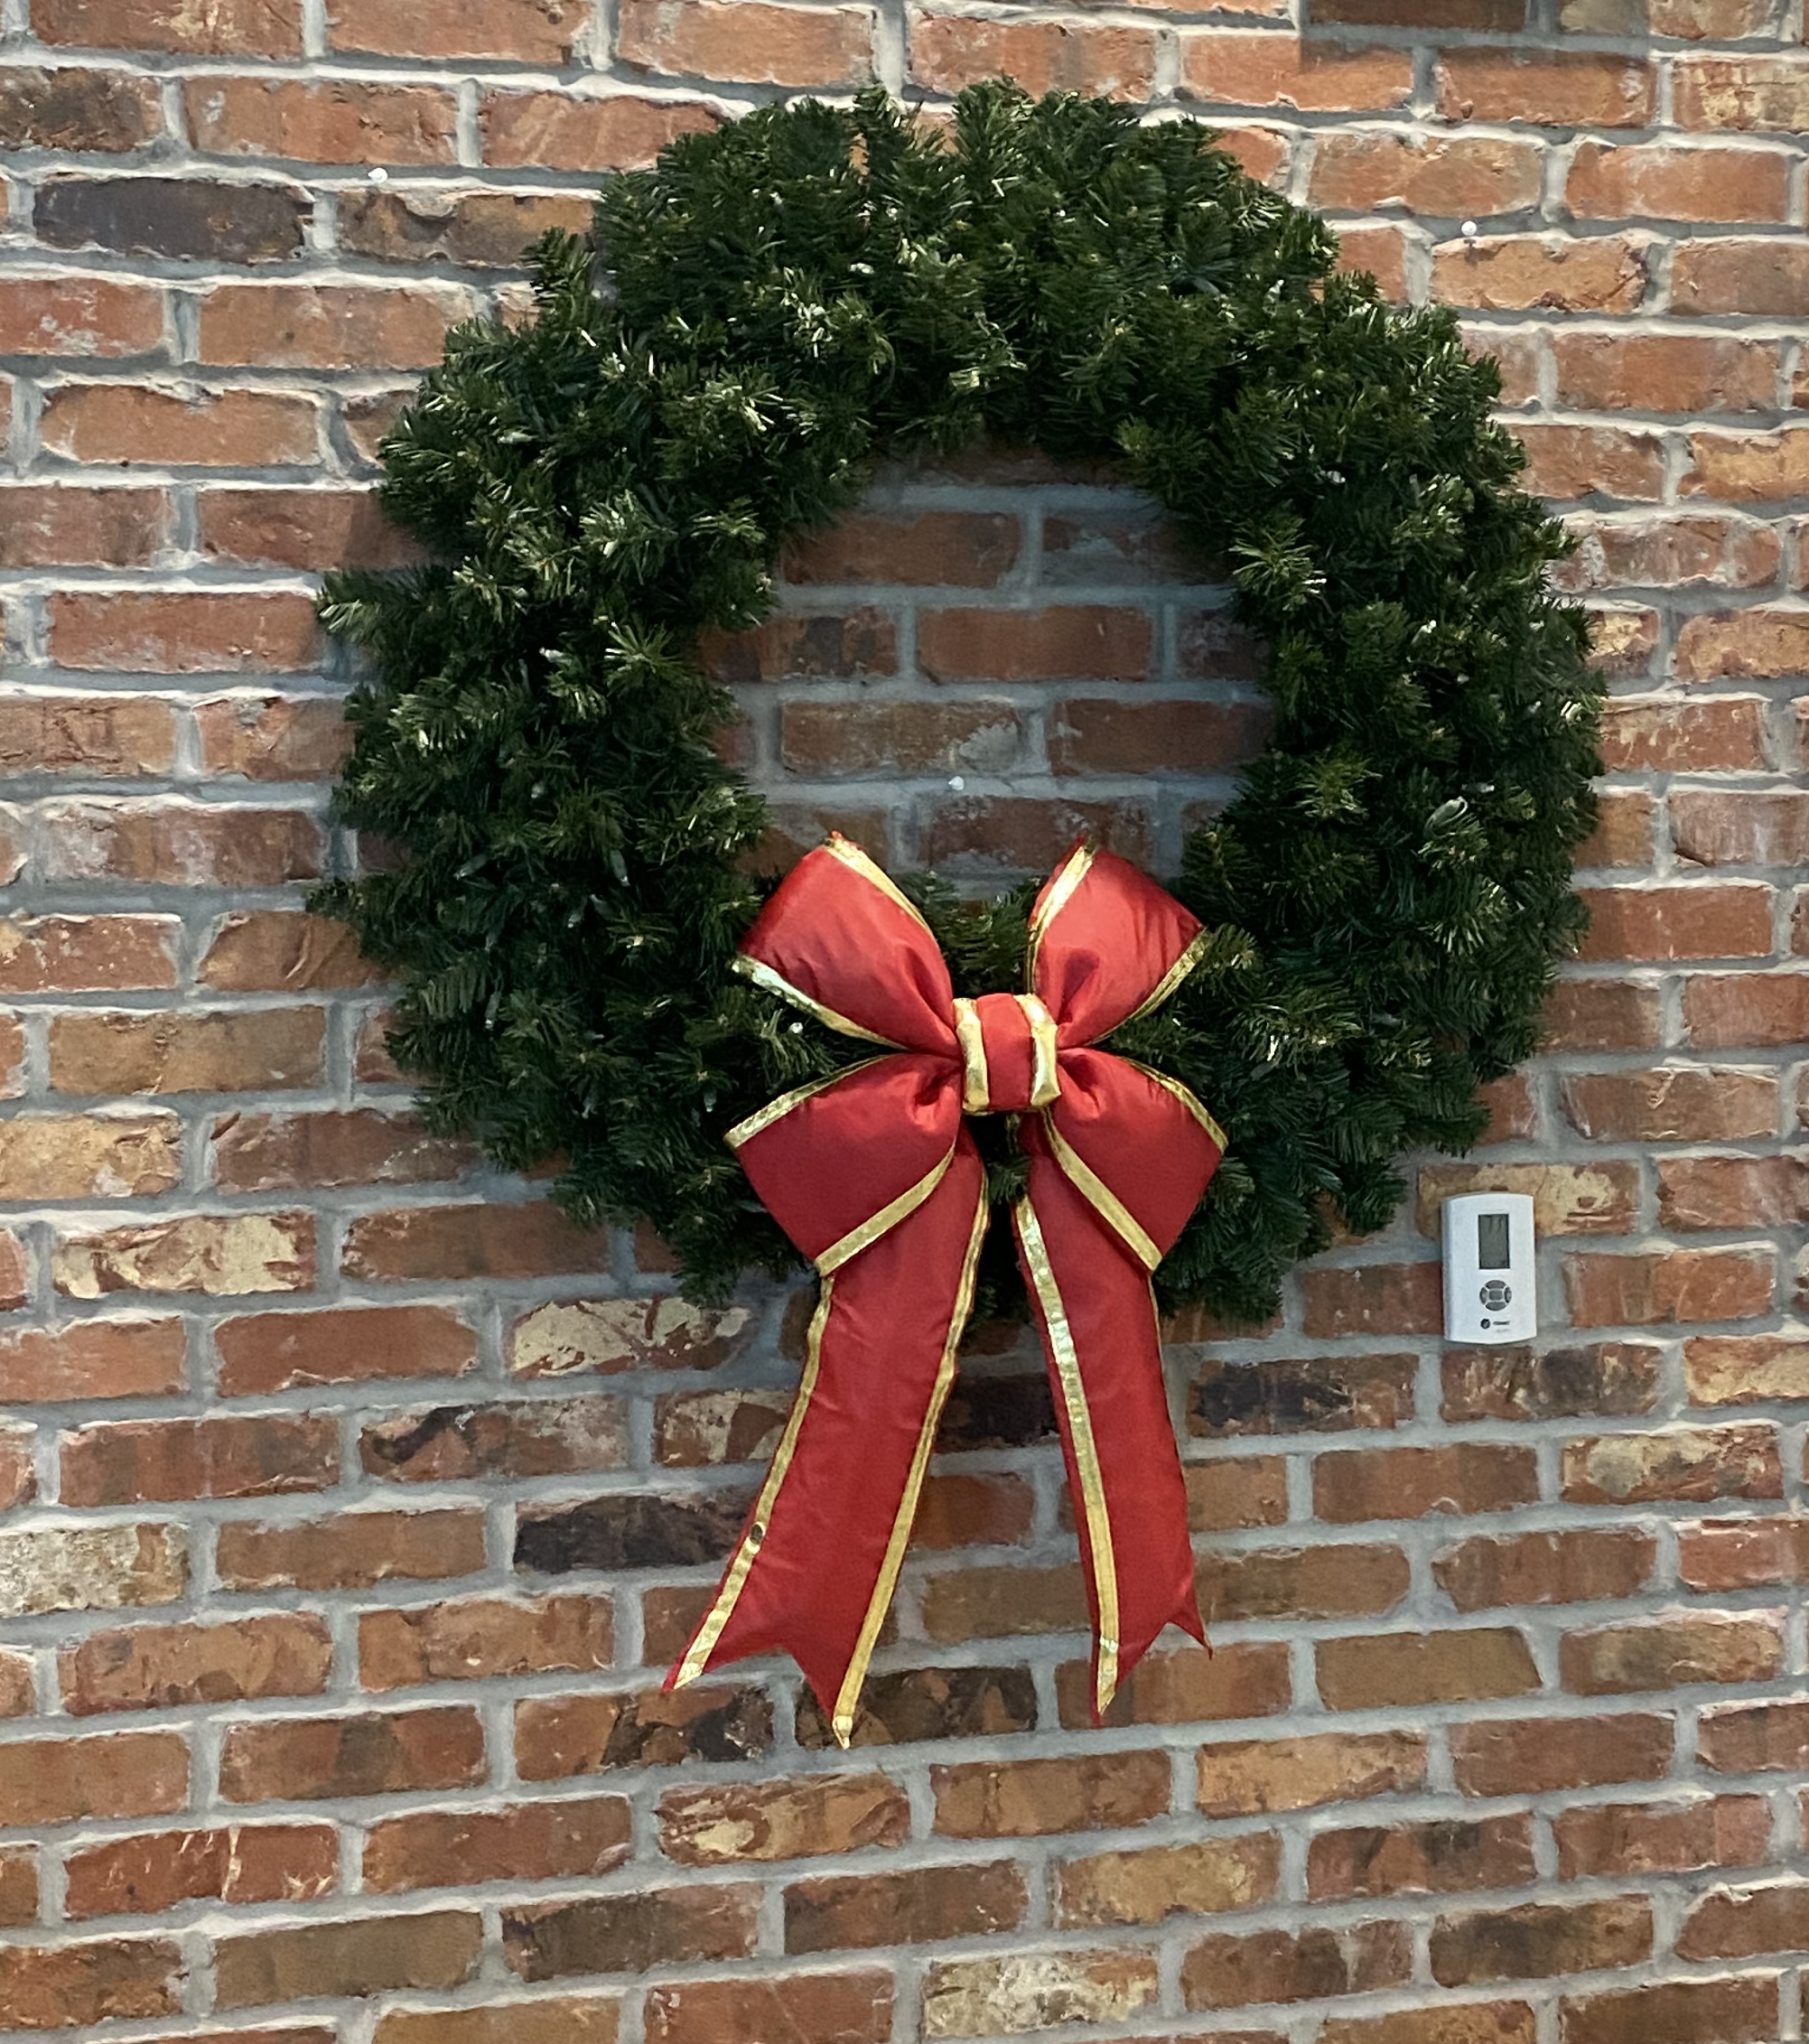 Lighted wreath on wood door